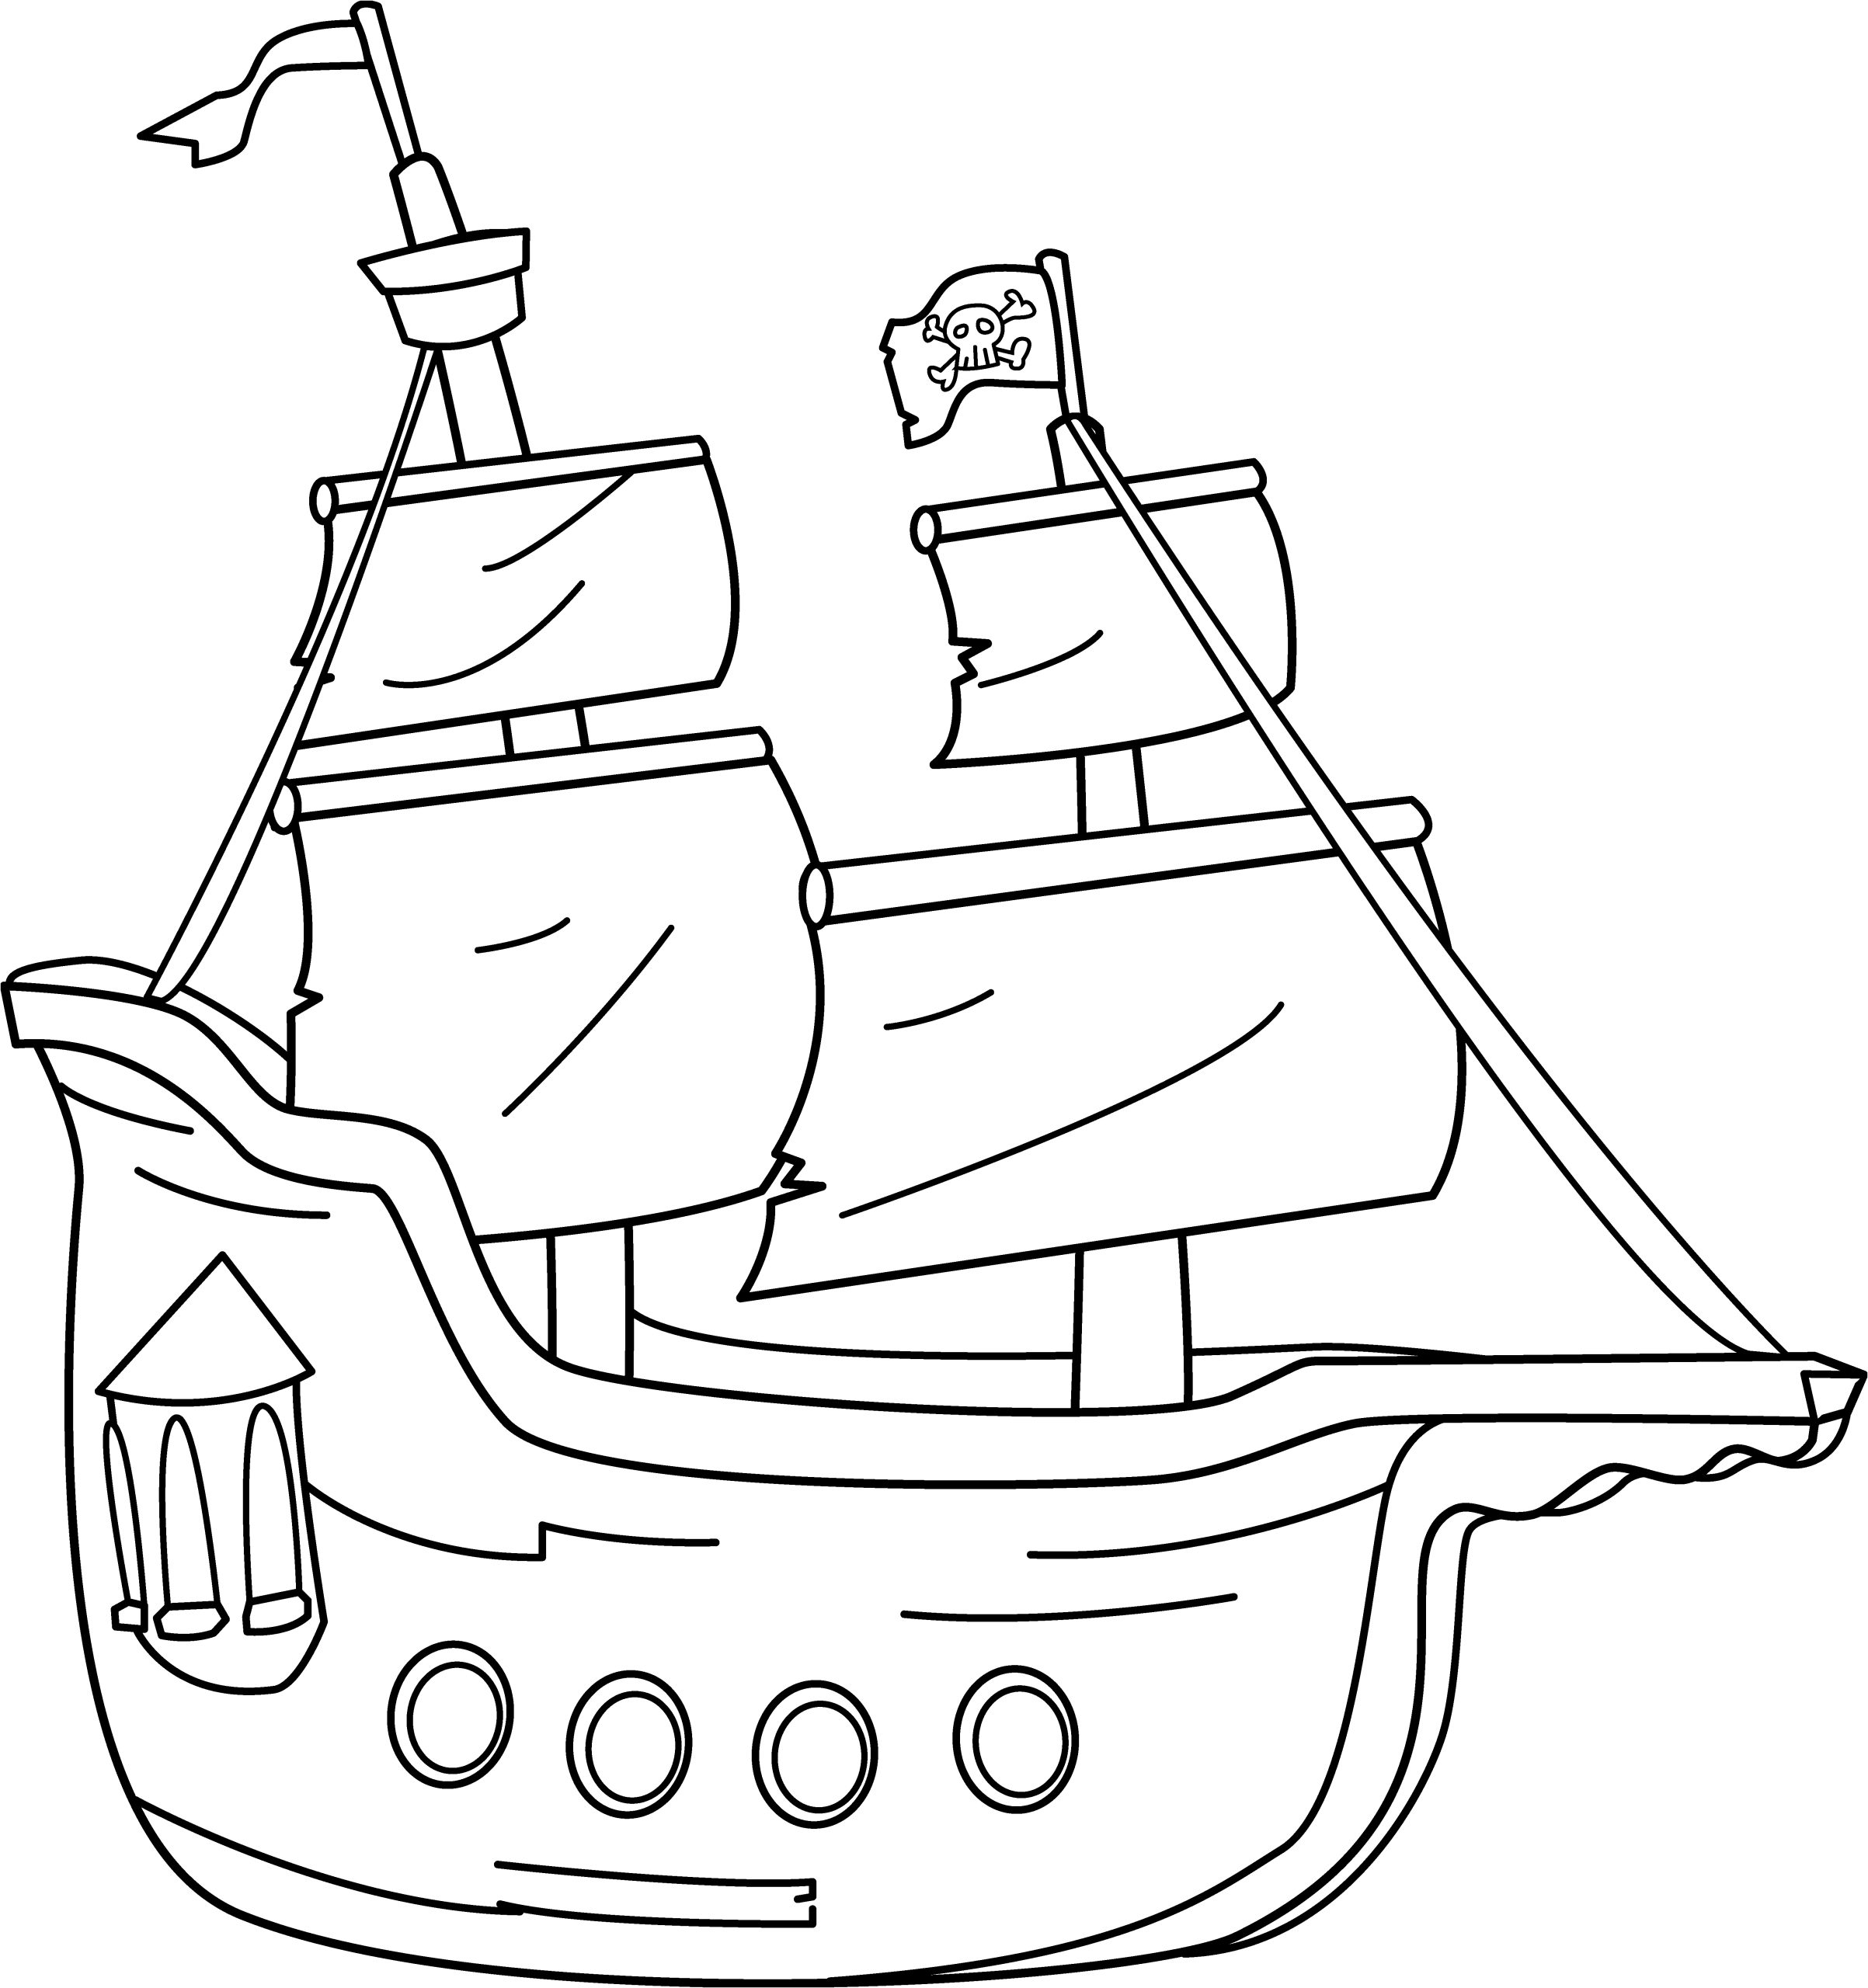 coloriage pirate maternelle cool stock coloriage bateau de pirates vecteur dessin gratuit a imprimer